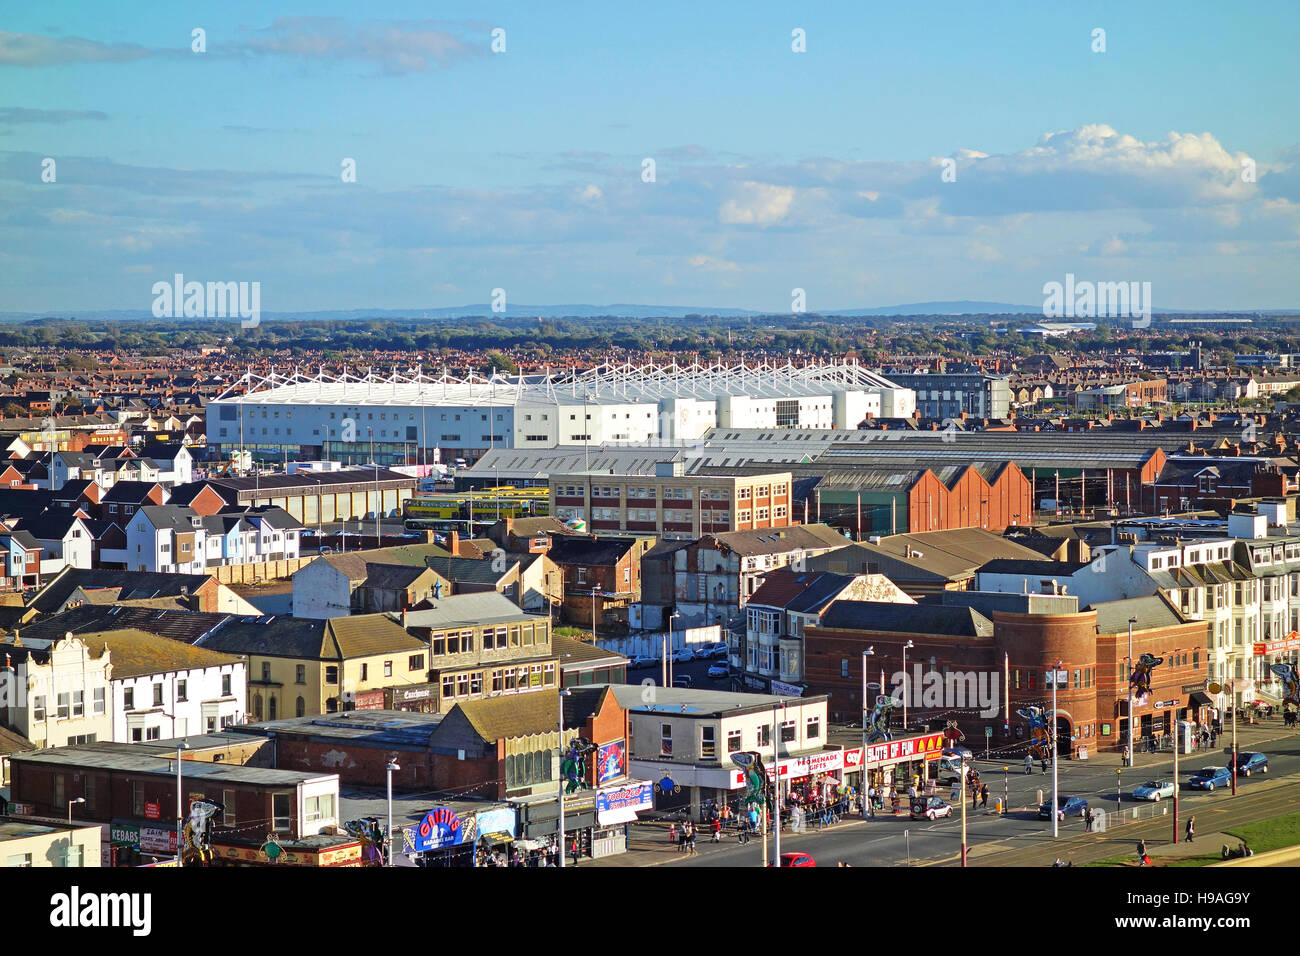 La ville de Blackpool, dans le Lancashire, Angleterre, Royaume-Uni. Banque D'Images